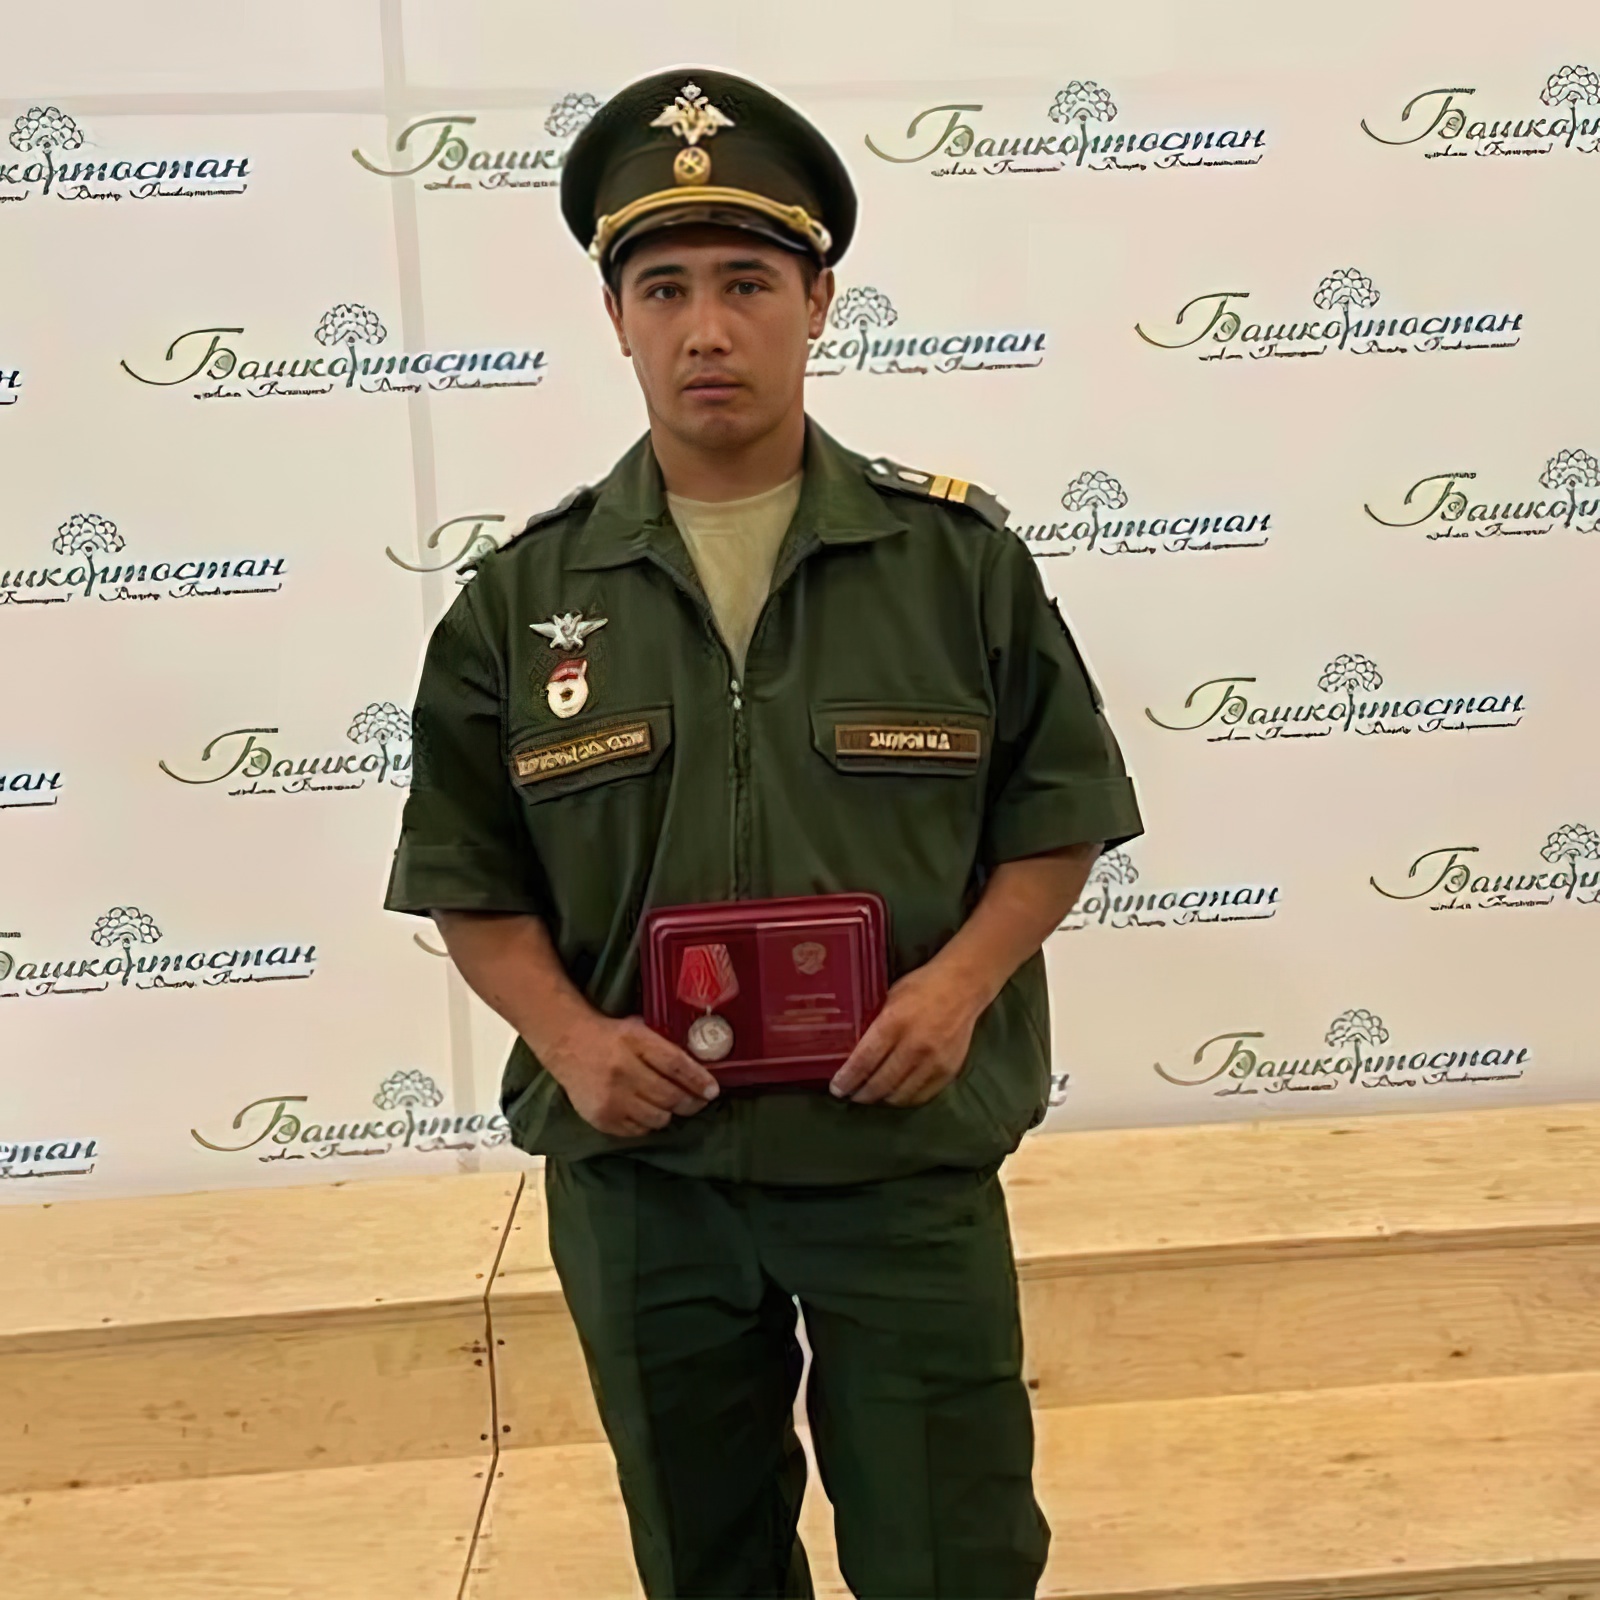 Участник СВО из Салаватского района Башкирии награжден медалью Жукова